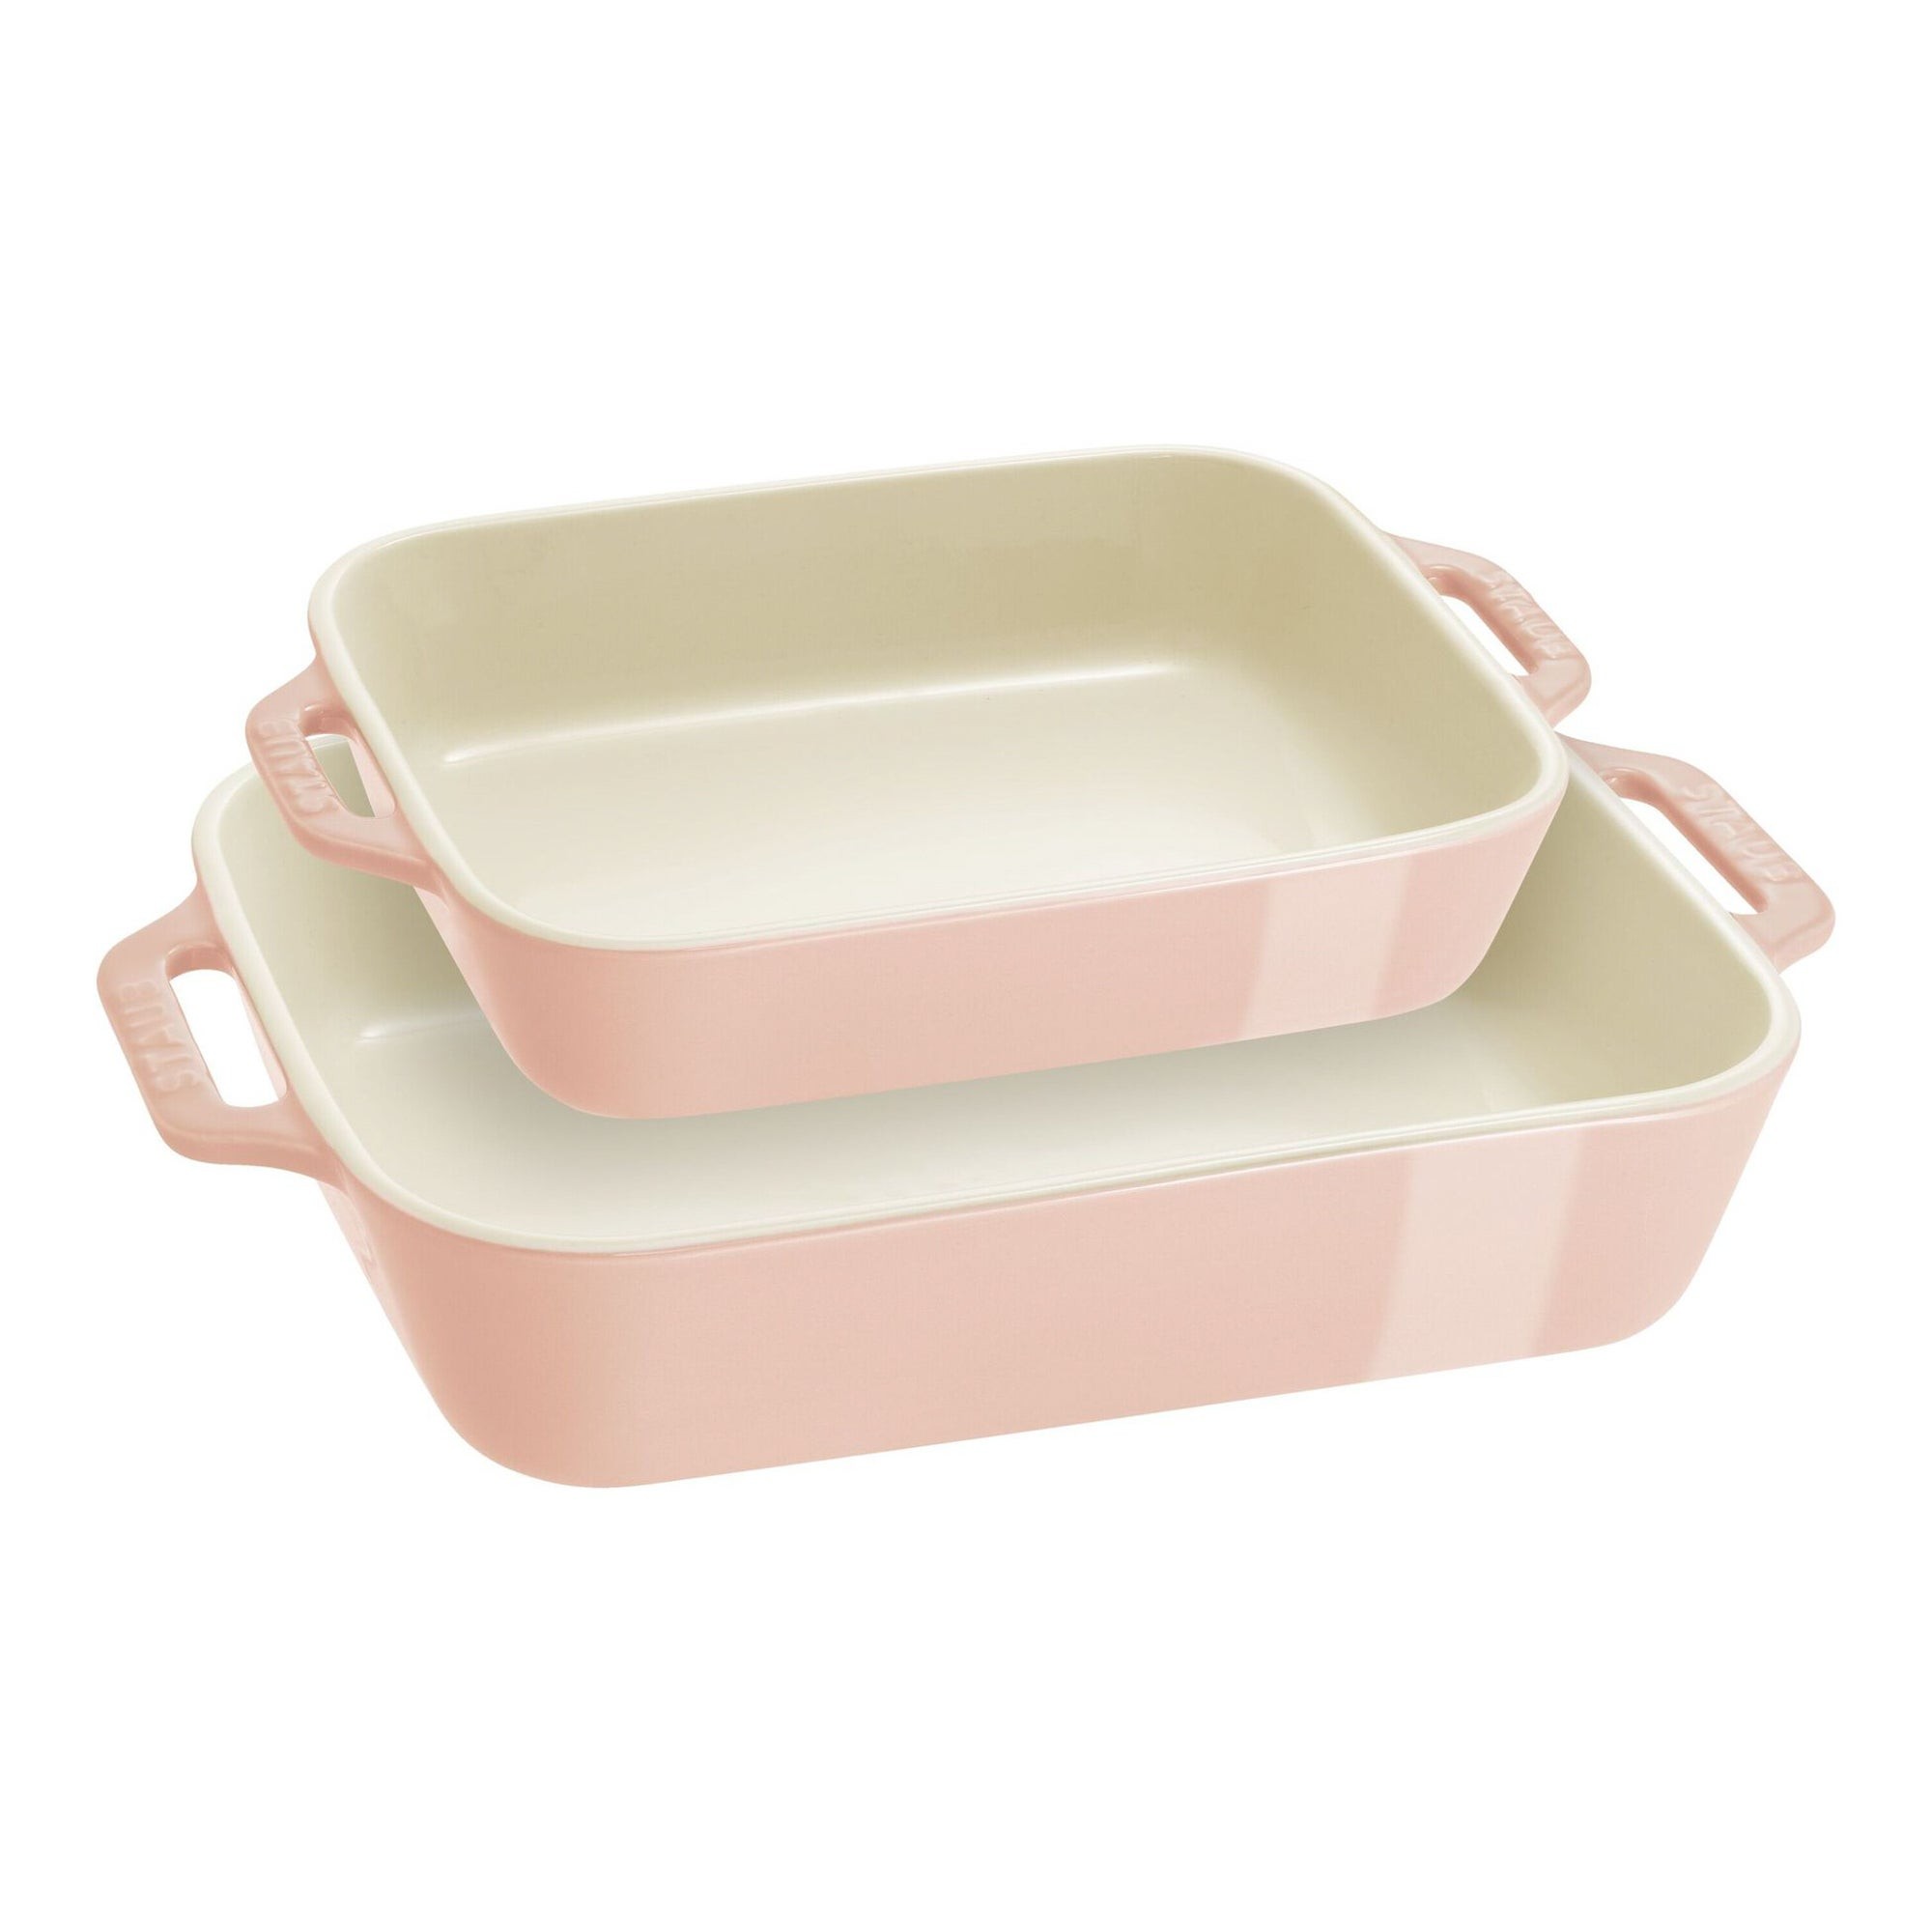 2pc Ceramic Rectangular Baking Dish Set Light Pink